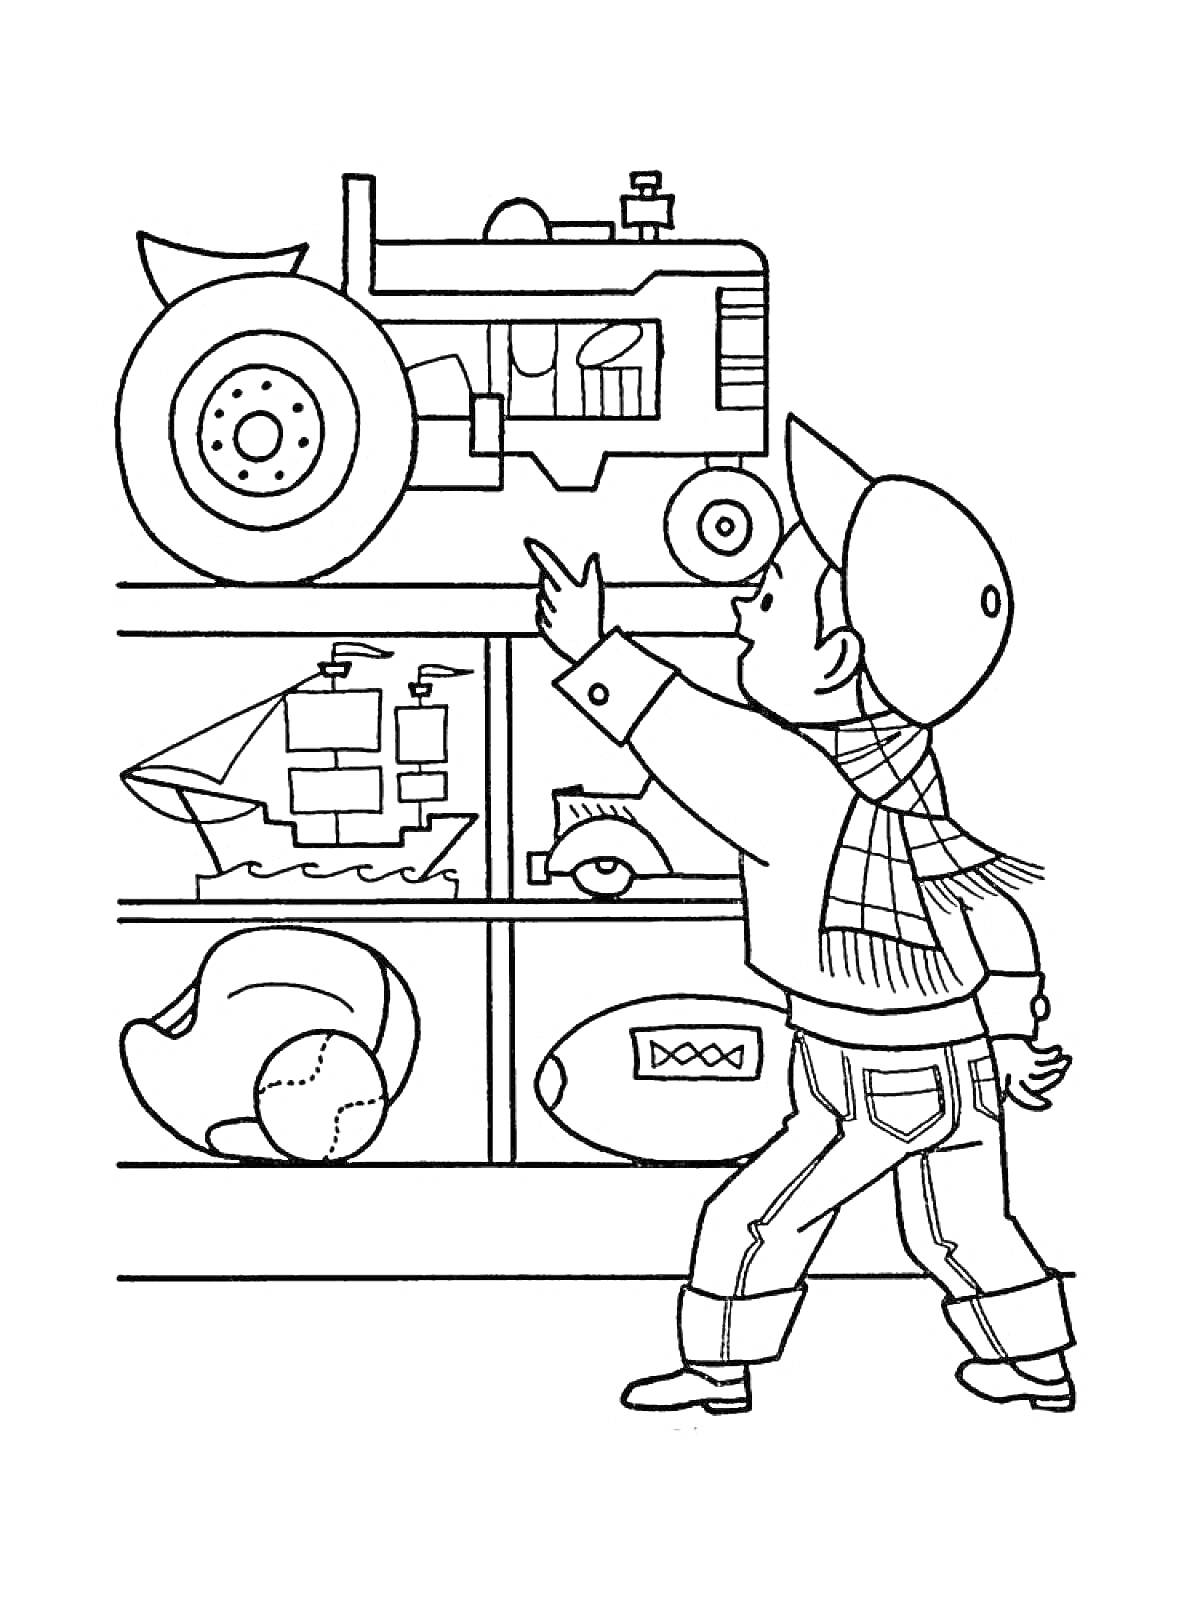 Раскраска Мальчик в магазине игрушек указывает на трактор на полке, рядом расположены игрушечный парусник, мяч и лодка.